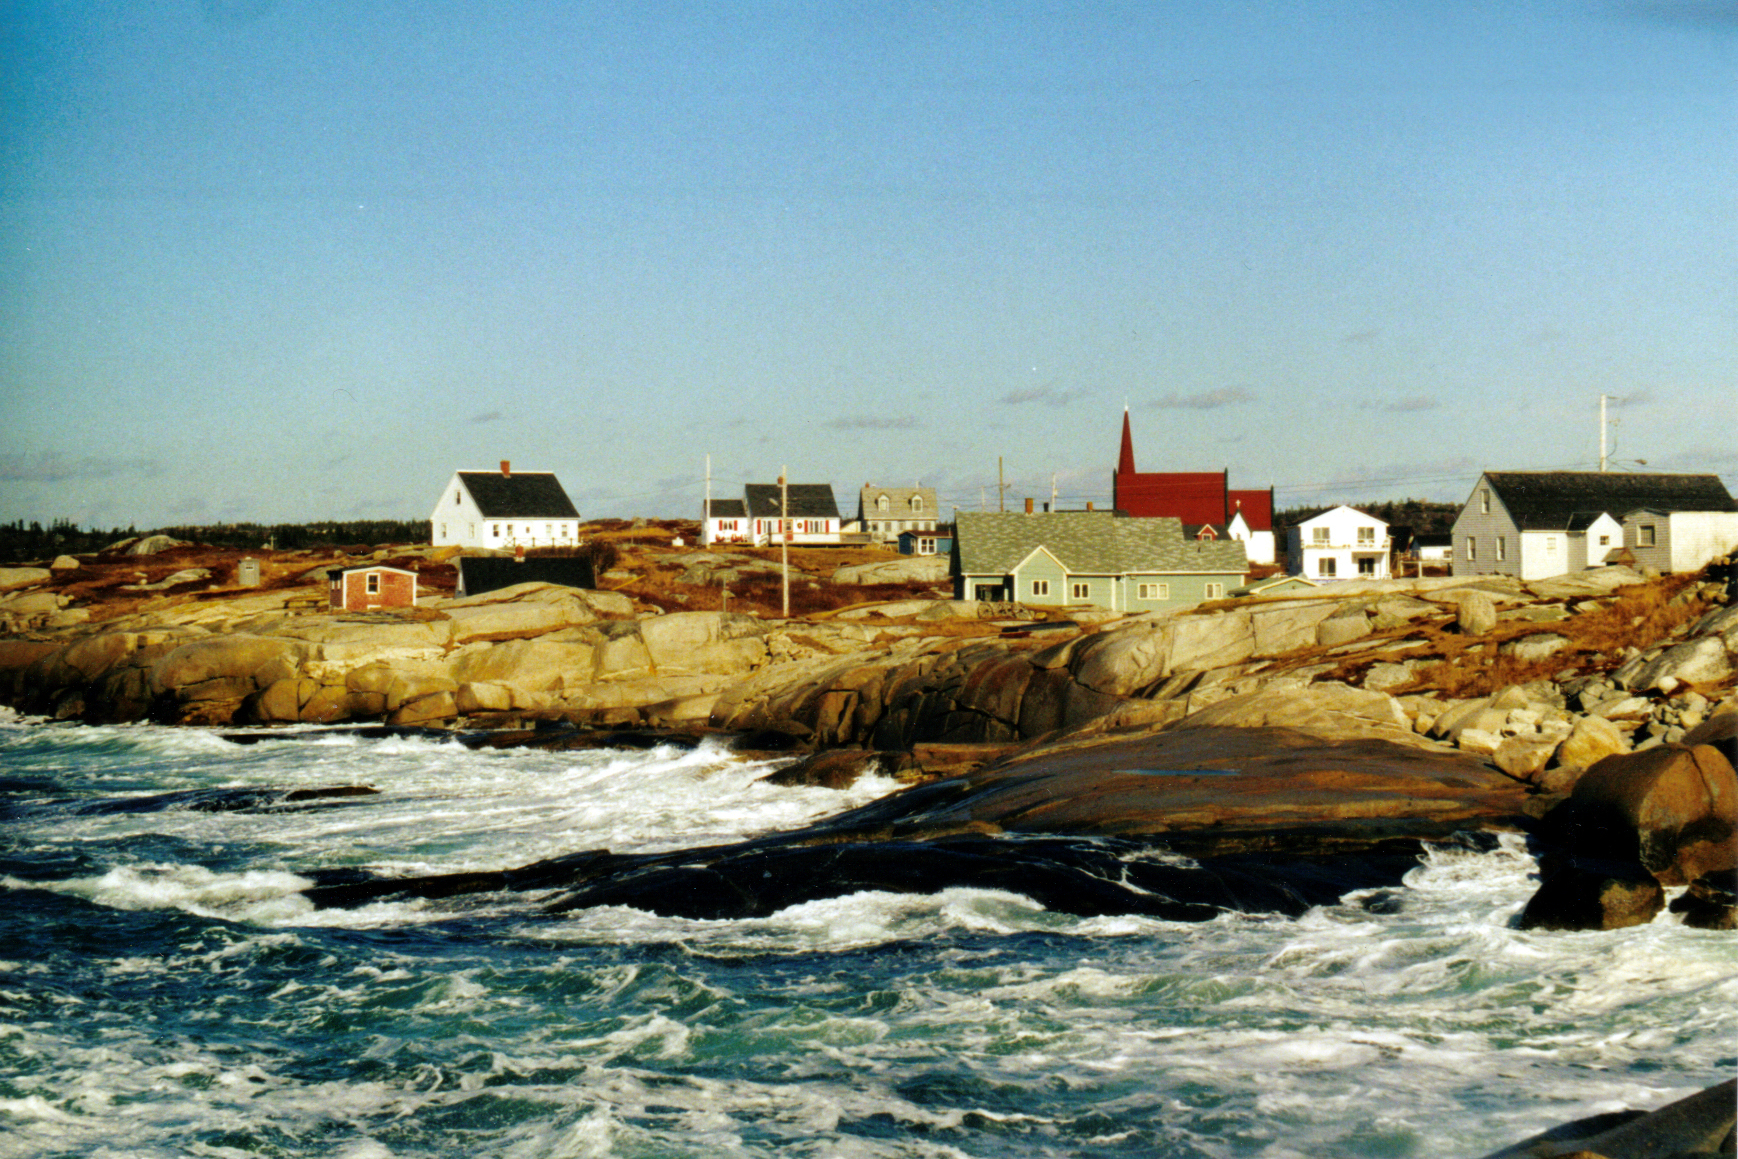 CUFC 1997 Halifax Nova Scotia